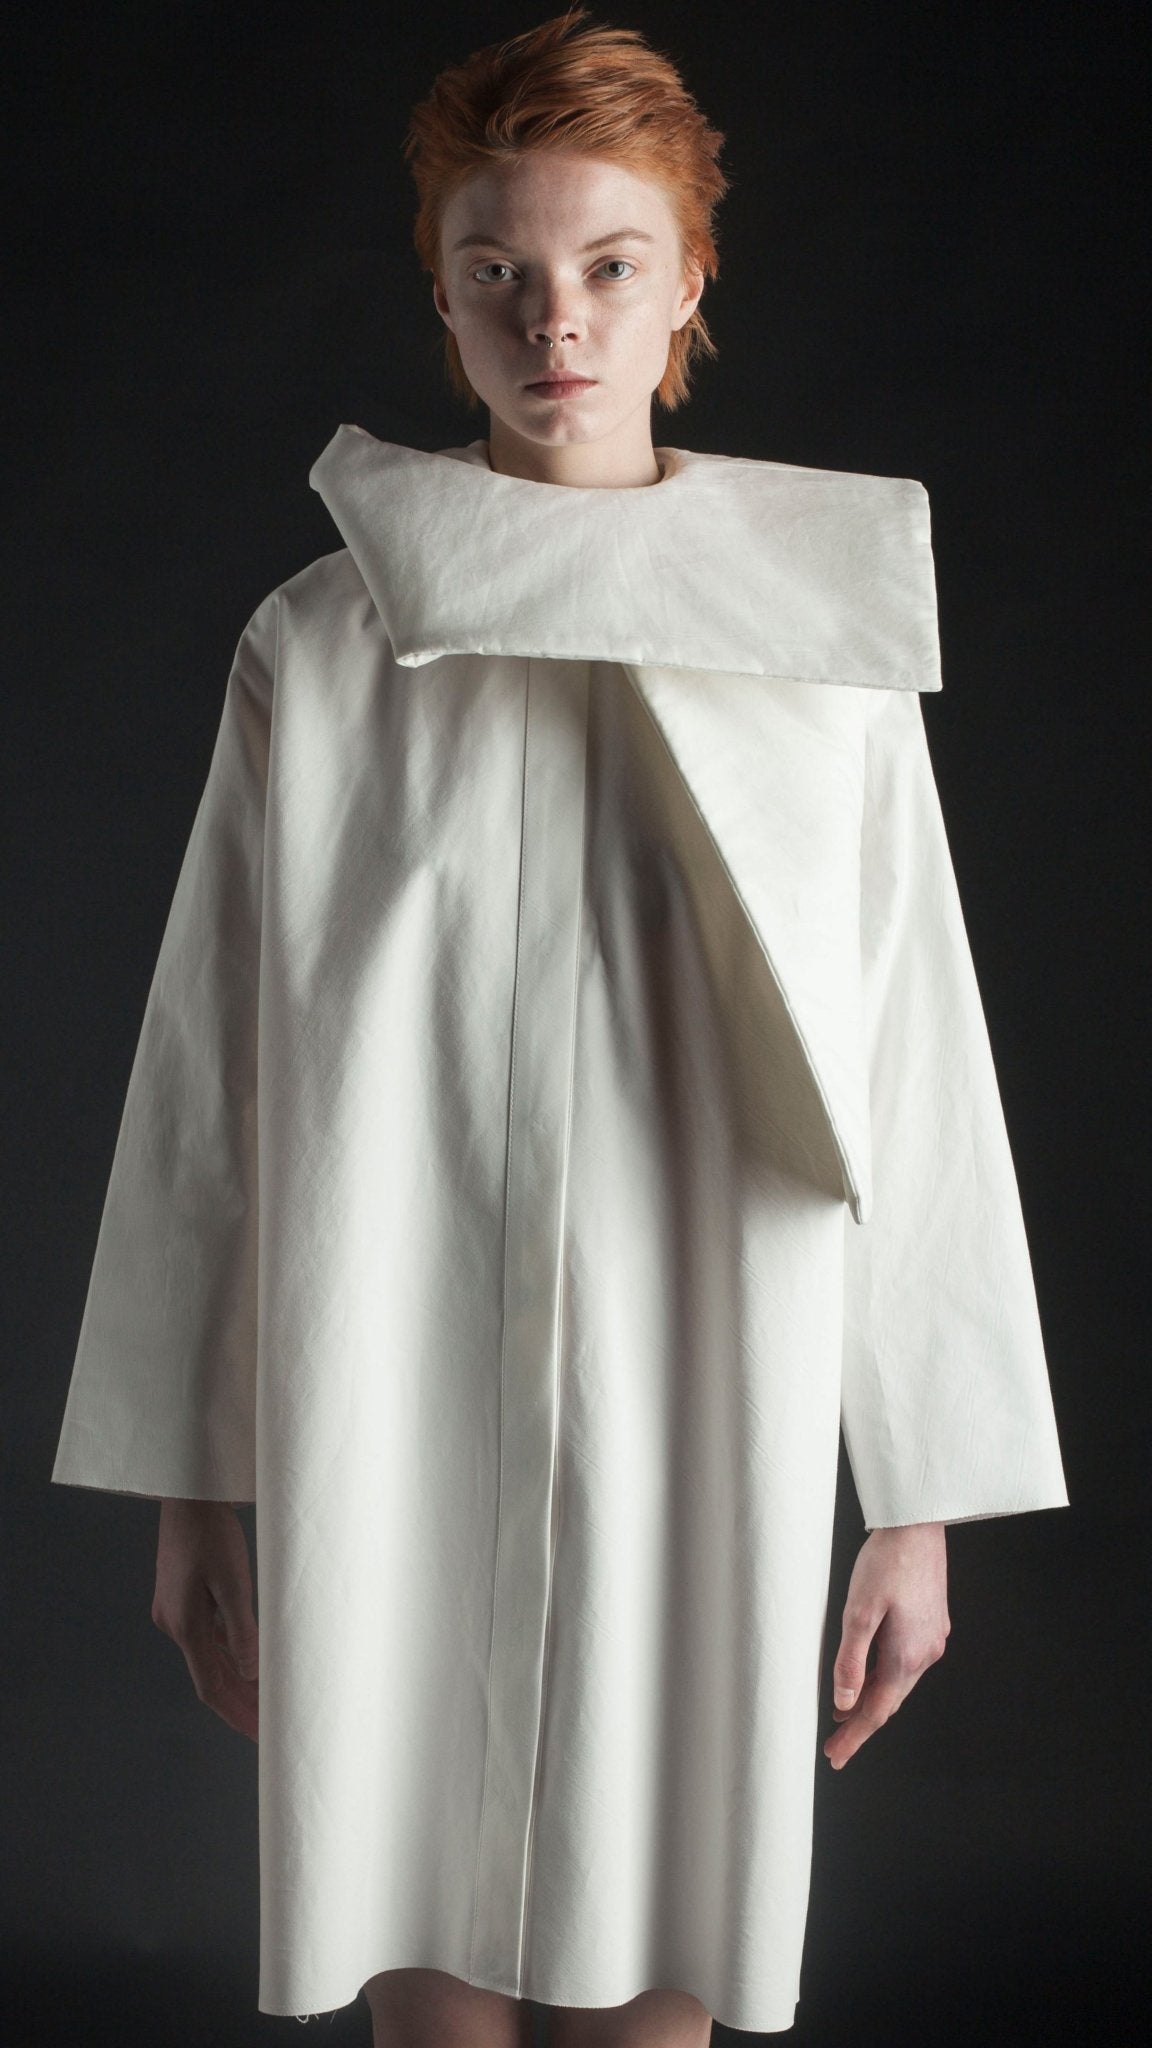 CORPORATE 3-Way Transforming Shirt/Dress - DZHUS - The Clothing LoungeDZHUS